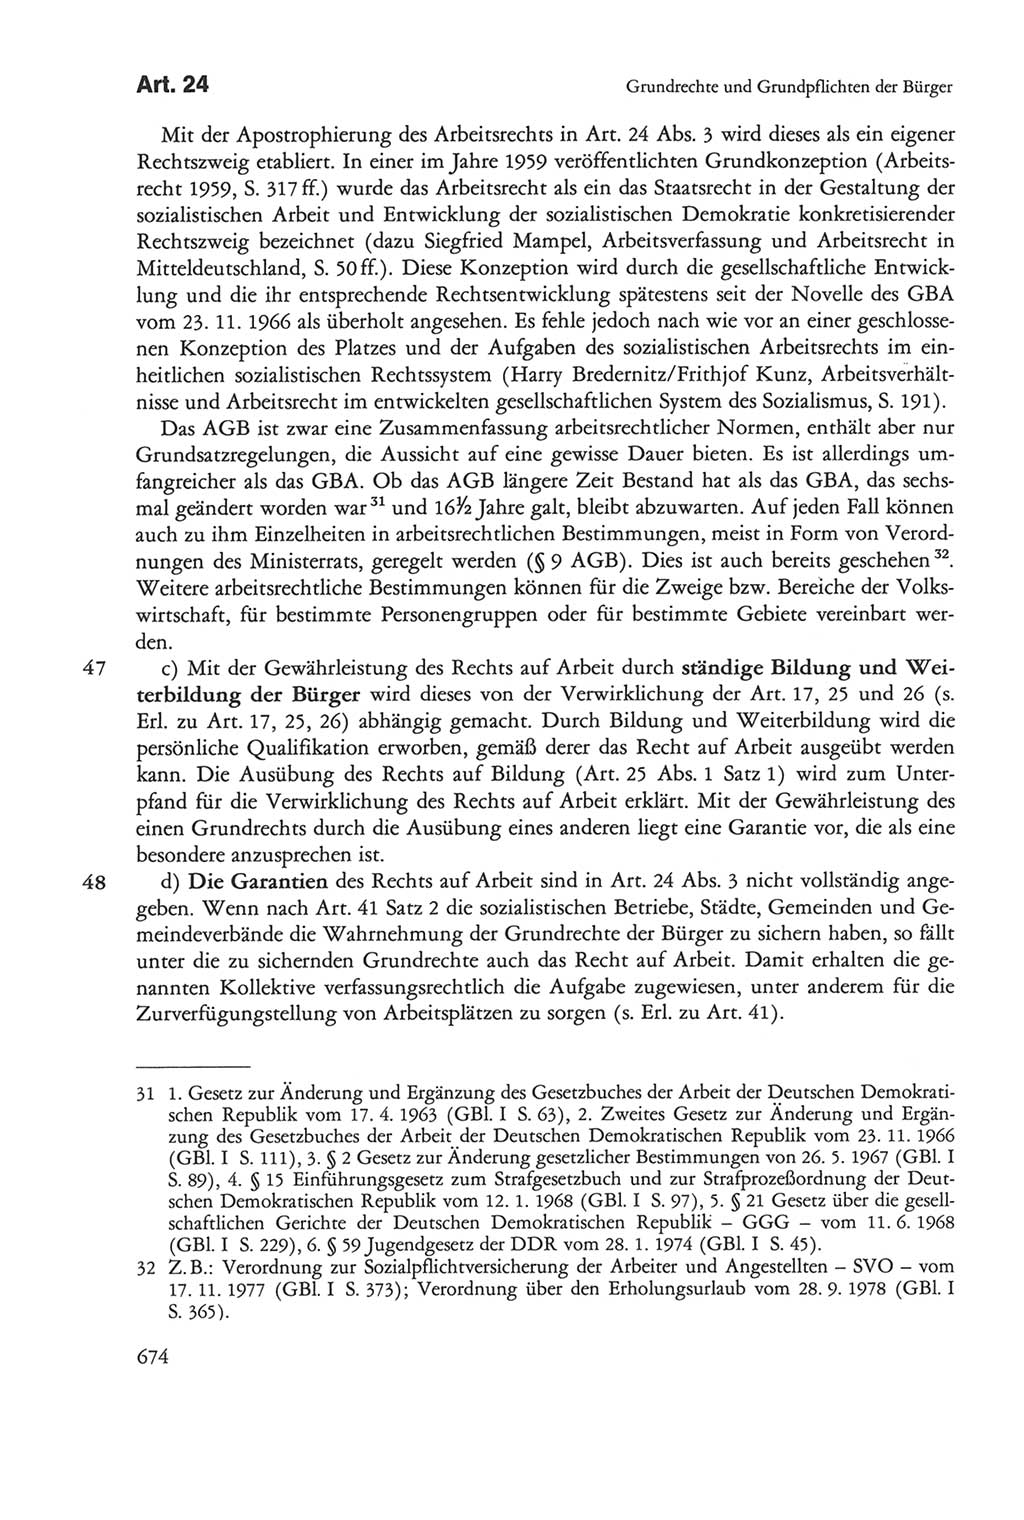 Die sozialistische Verfassung der Deutschen Demokratischen Republik (DDR), Kommentar 1982, Seite 674 (Soz. Verf. DDR Komm. 1982, S. 674)